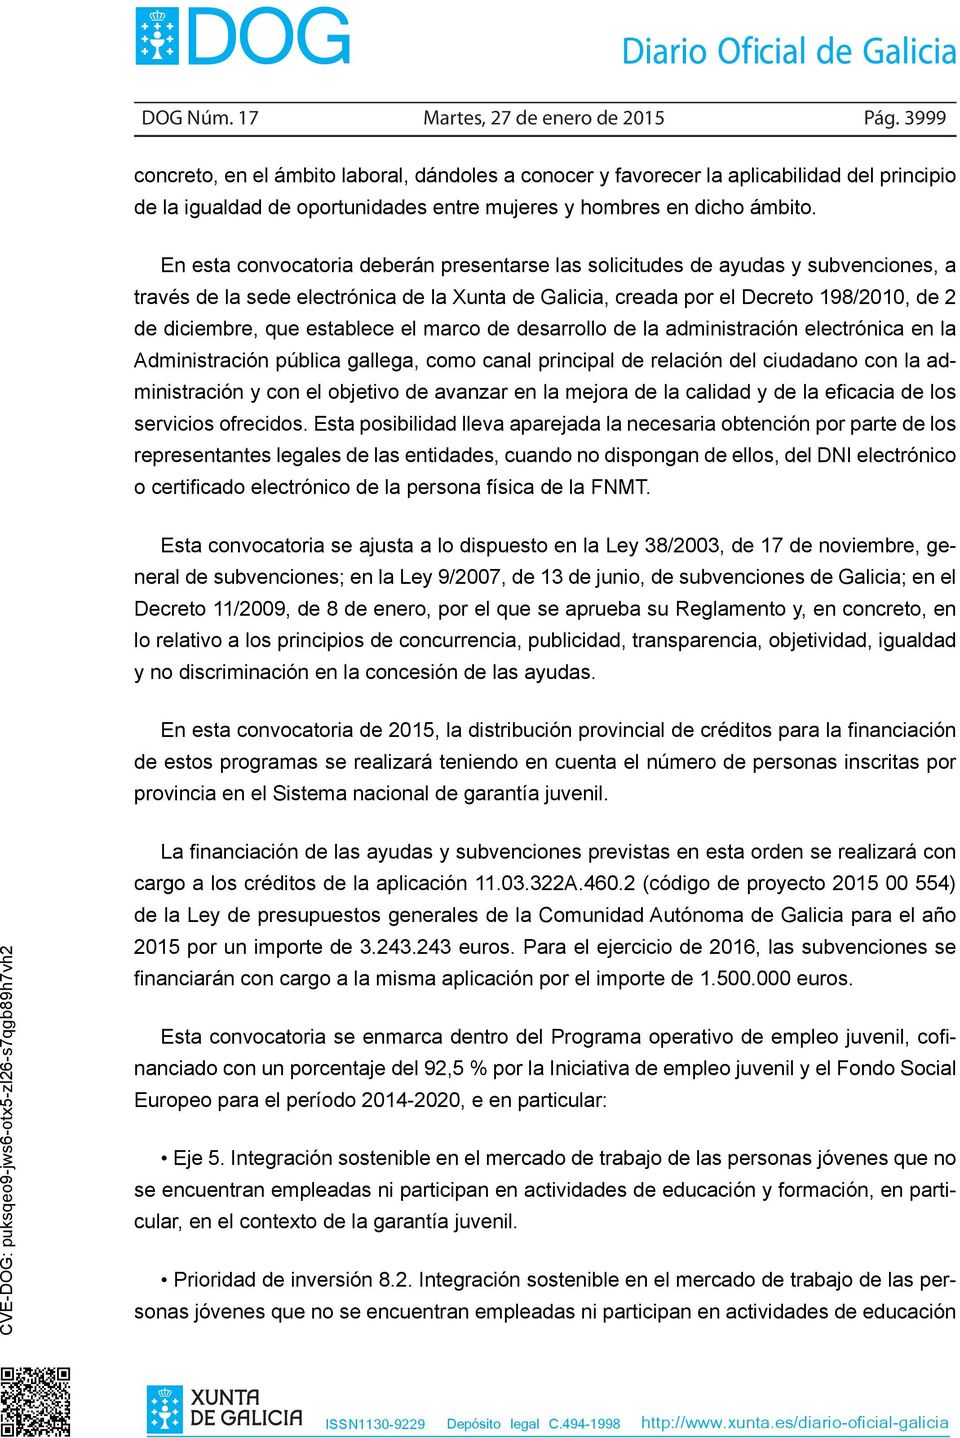 En esta convocatoria deberán presentarse las solicitudes de ayudas y subvenciones, a través de la sede electrónica de la Xunta de Galicia, creada por el Decreto 198/2010, de 2 de diciembre, que